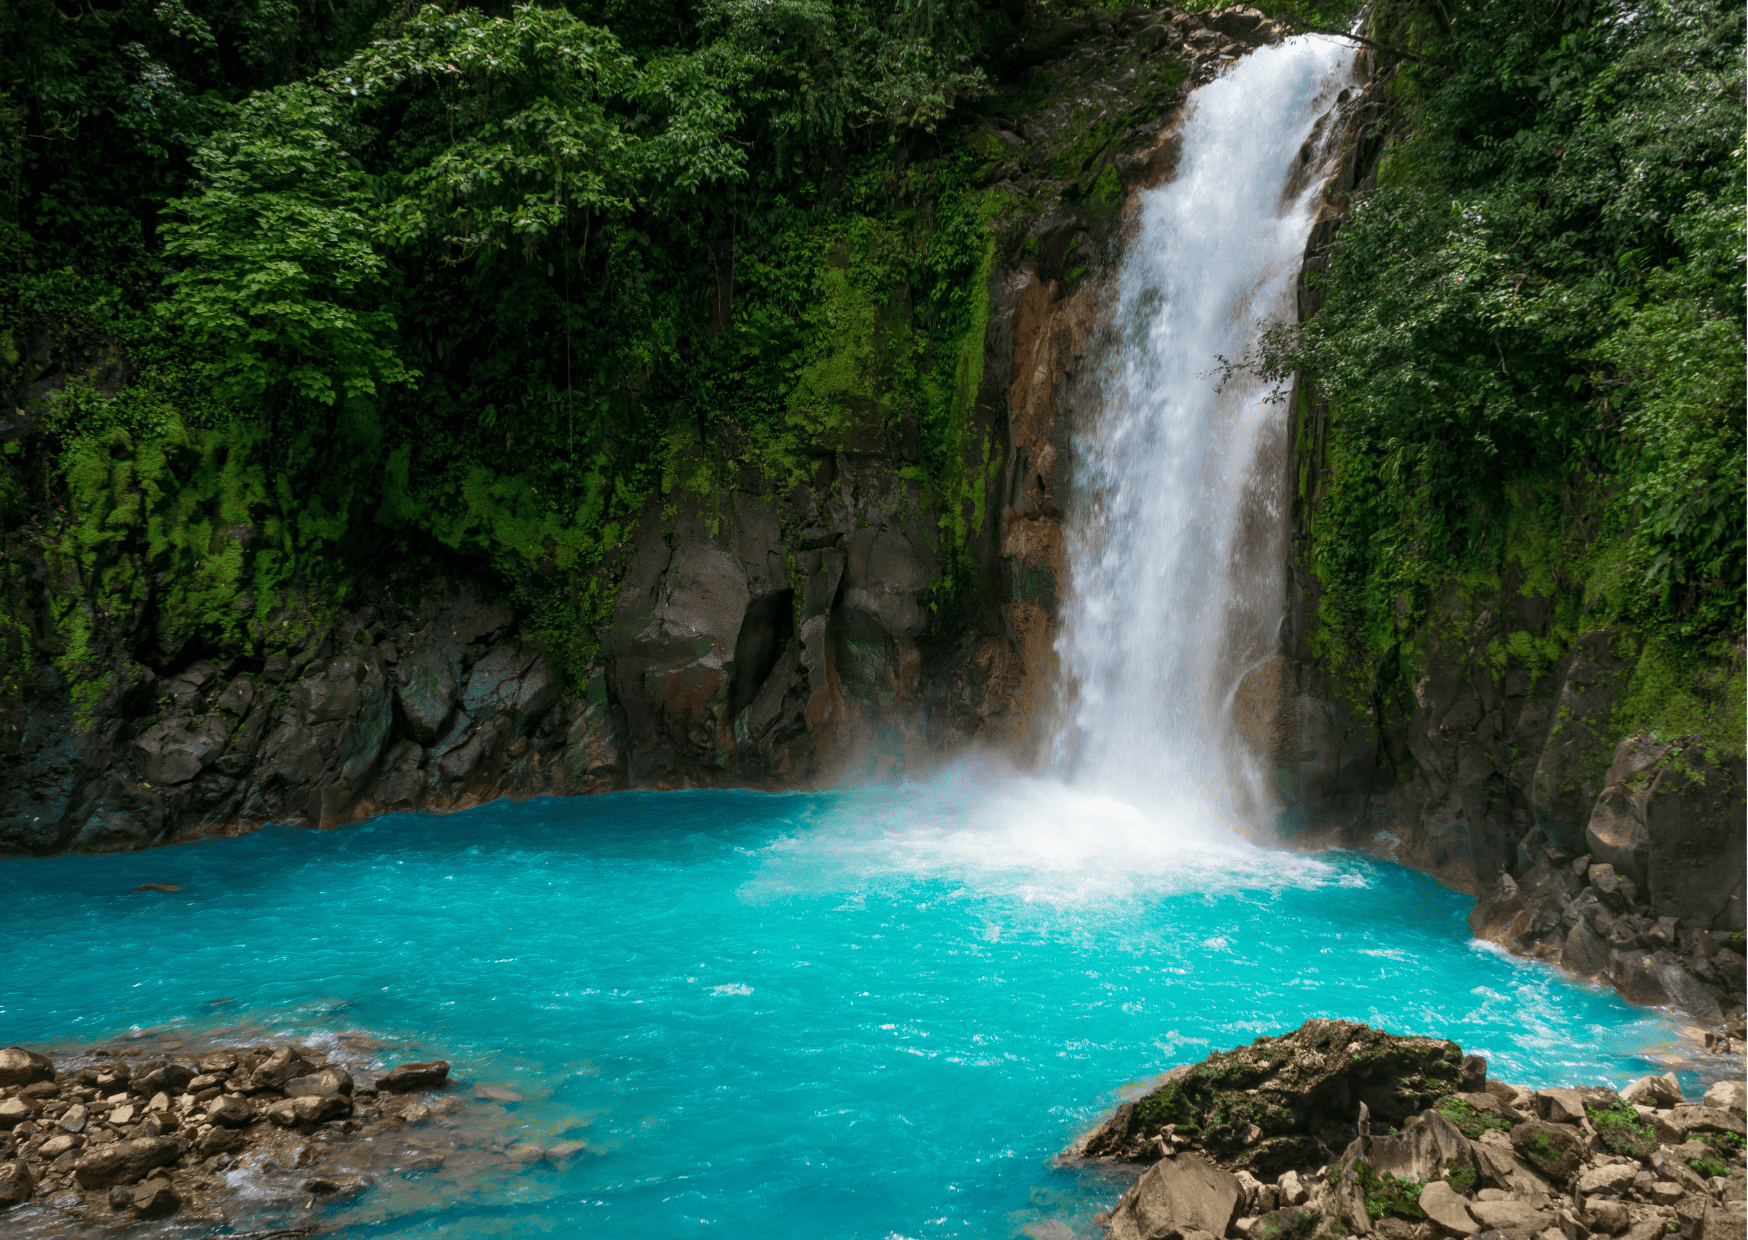 Rio Celeste Waterfall in Costa Rica - Aruba vs Costa Rica, Costa Rica vs Aruba